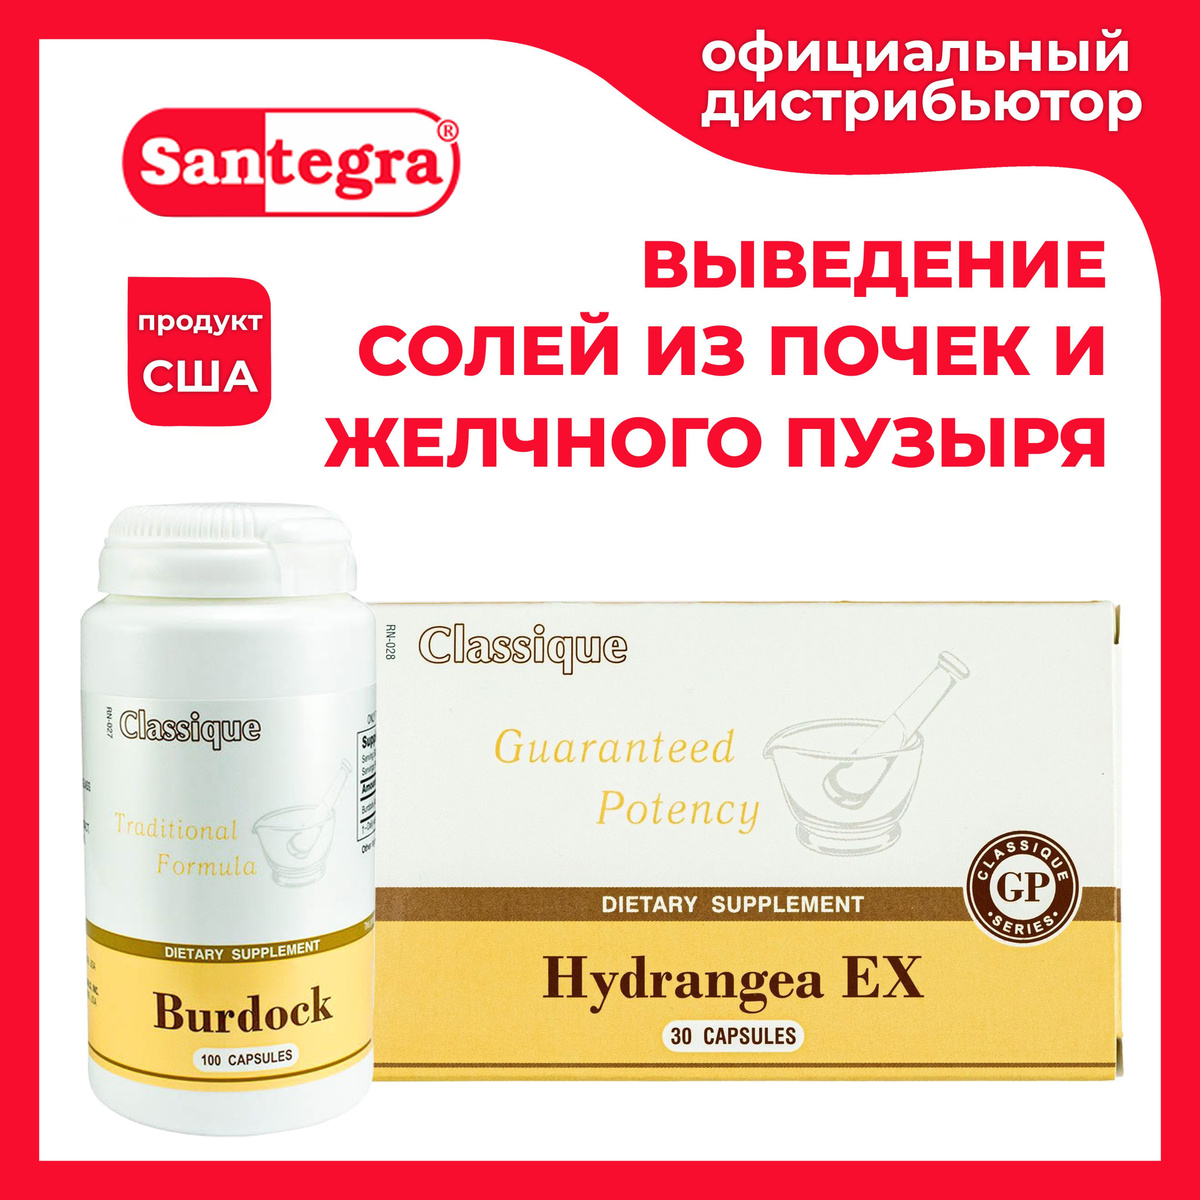 Hydrangea EX и Burdock Santegra - натуральные уросептики для профилактики образования камней в почках и желчном пузыре.